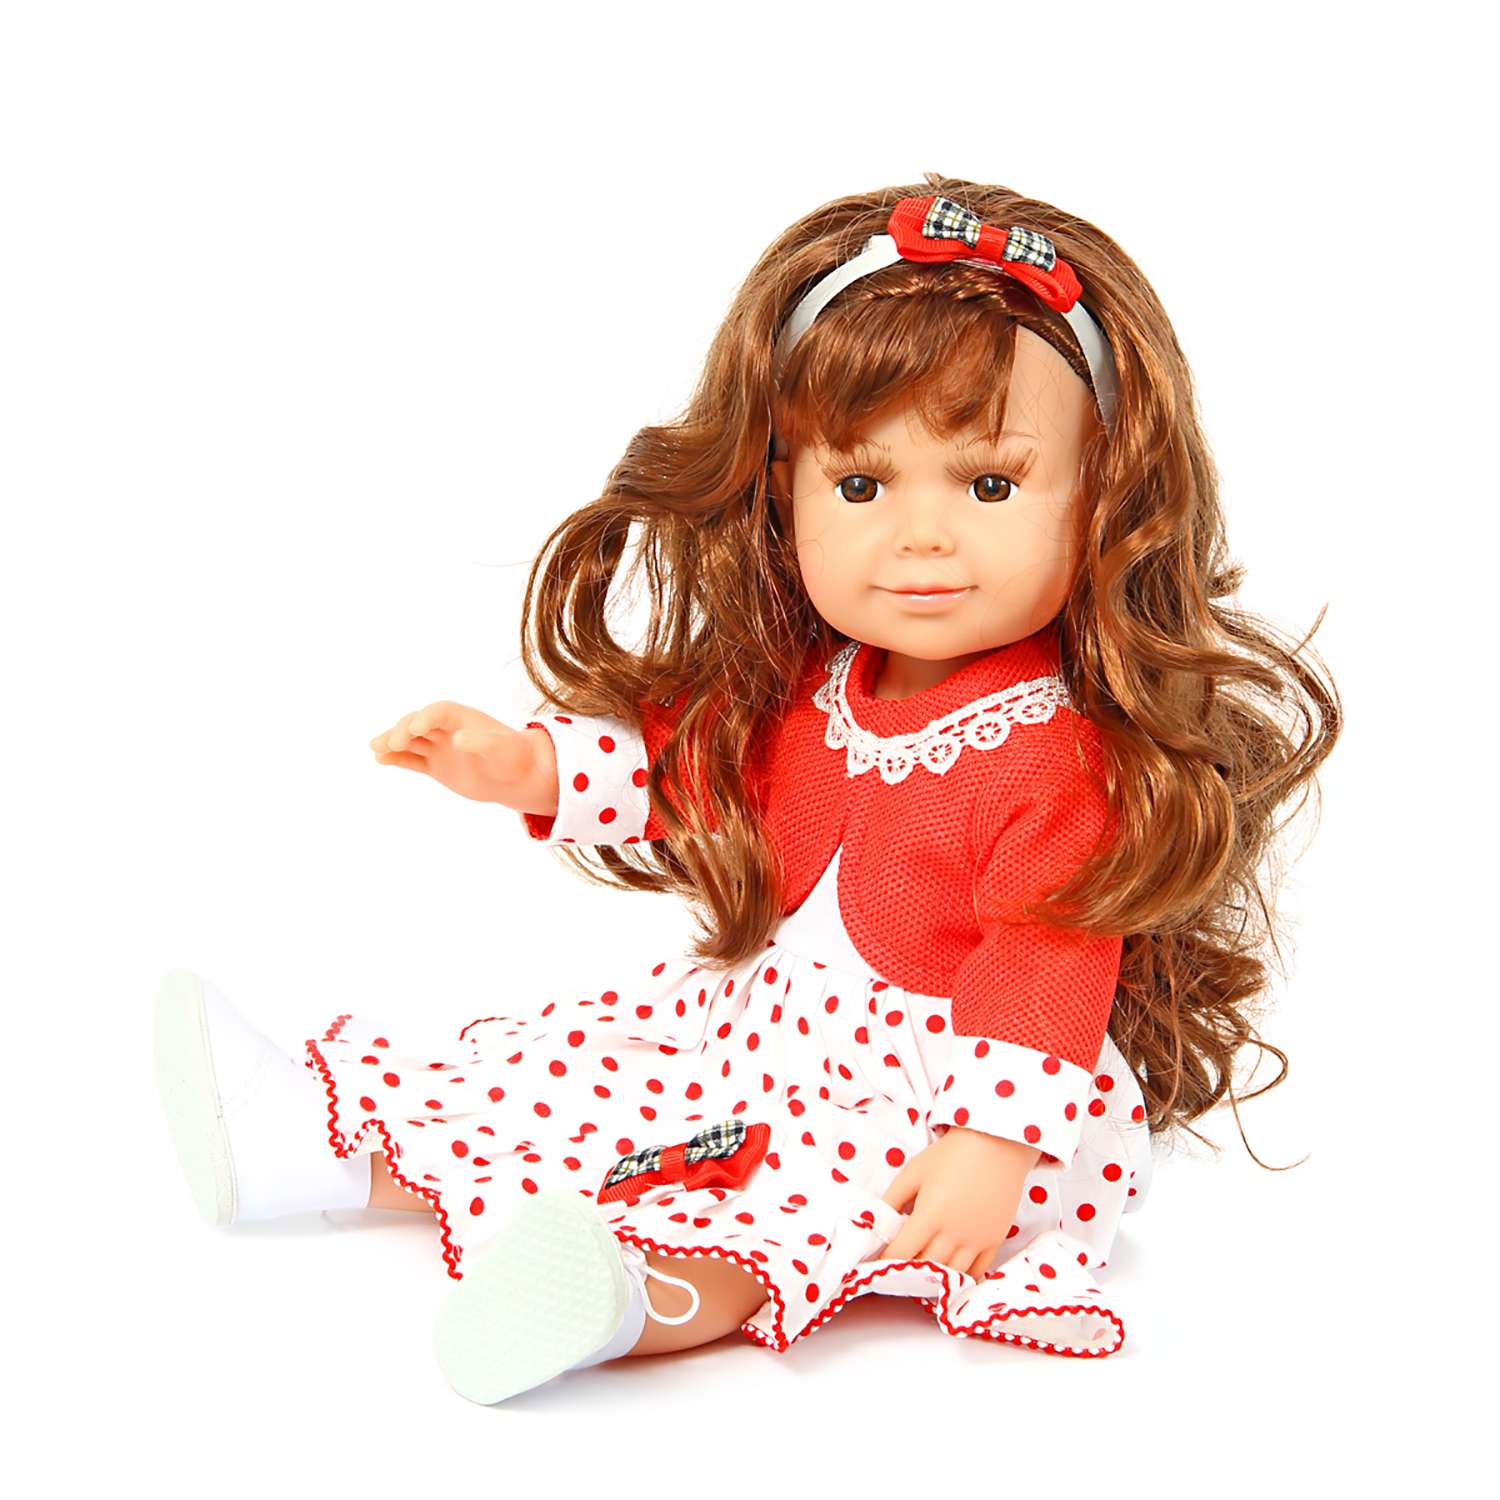 Ляльку для девочек. Кукла Lisa Jane Мэгги, 37 см, 57252.